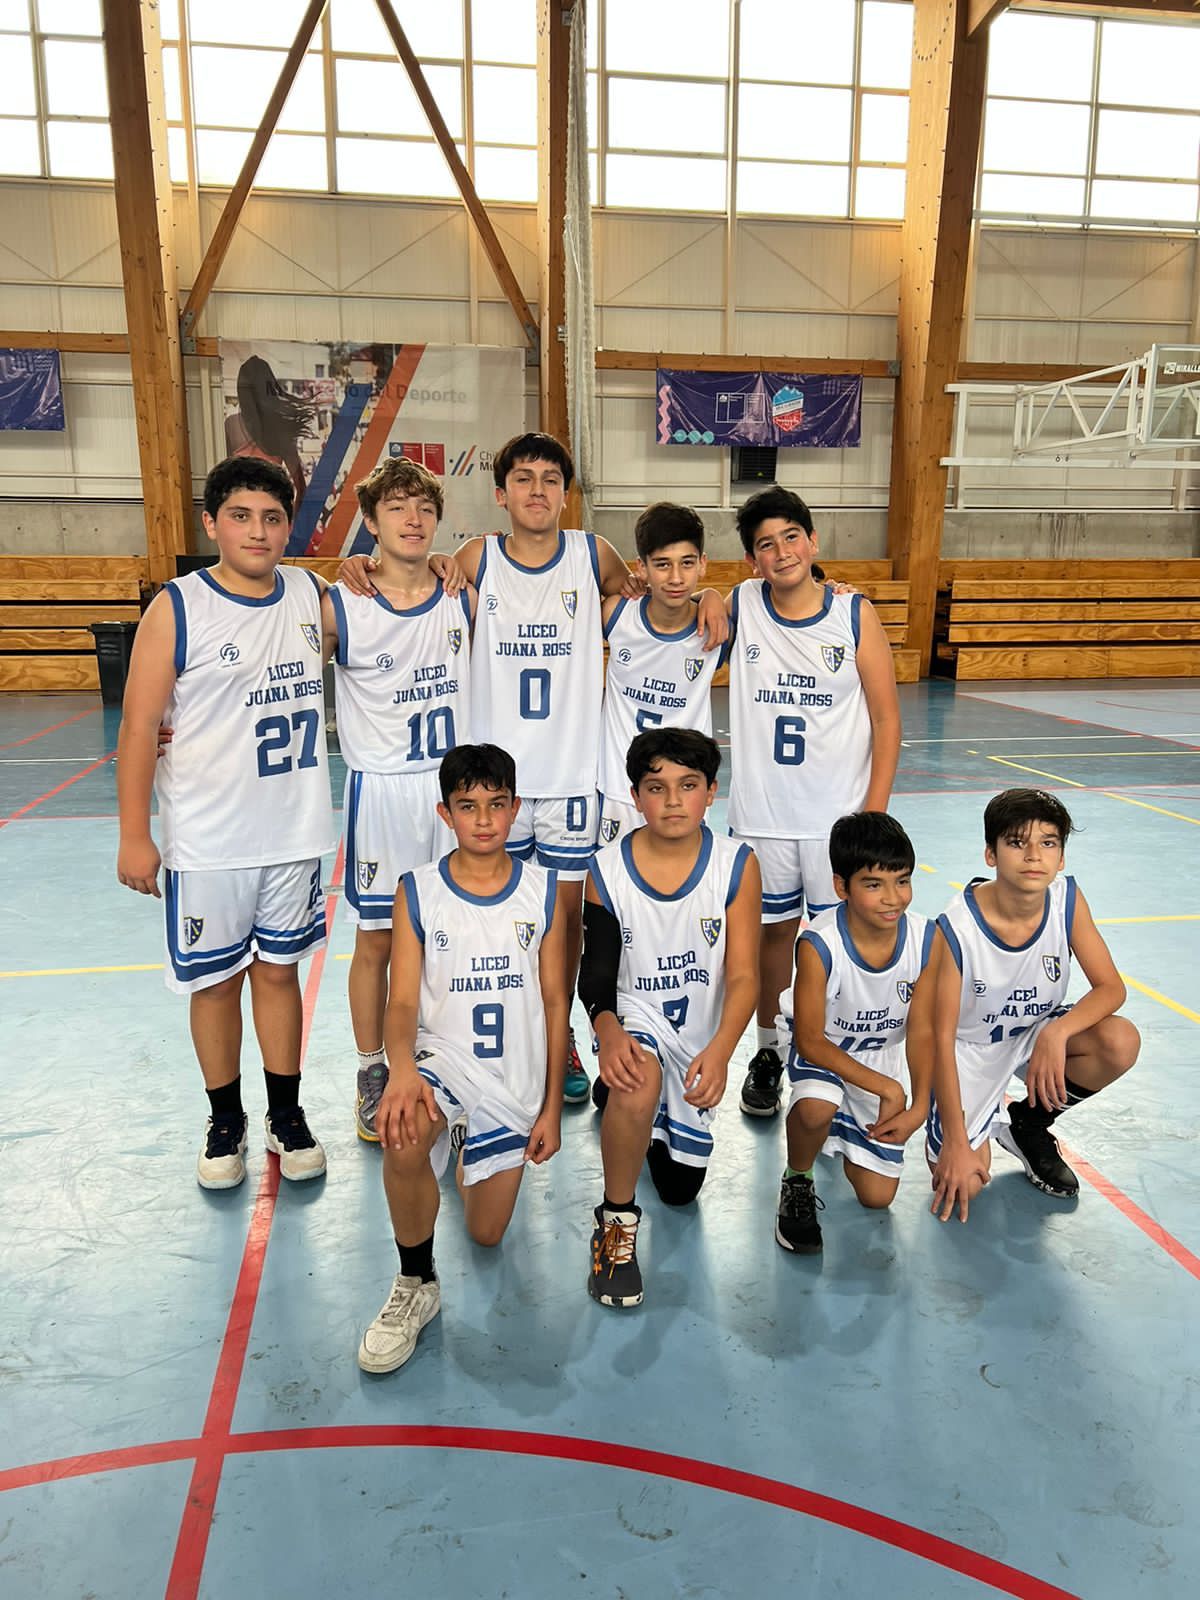 Equipo Sub-14 de varones de Liceo Juana Ross gana campeonato de básquetbol de Valparaíso